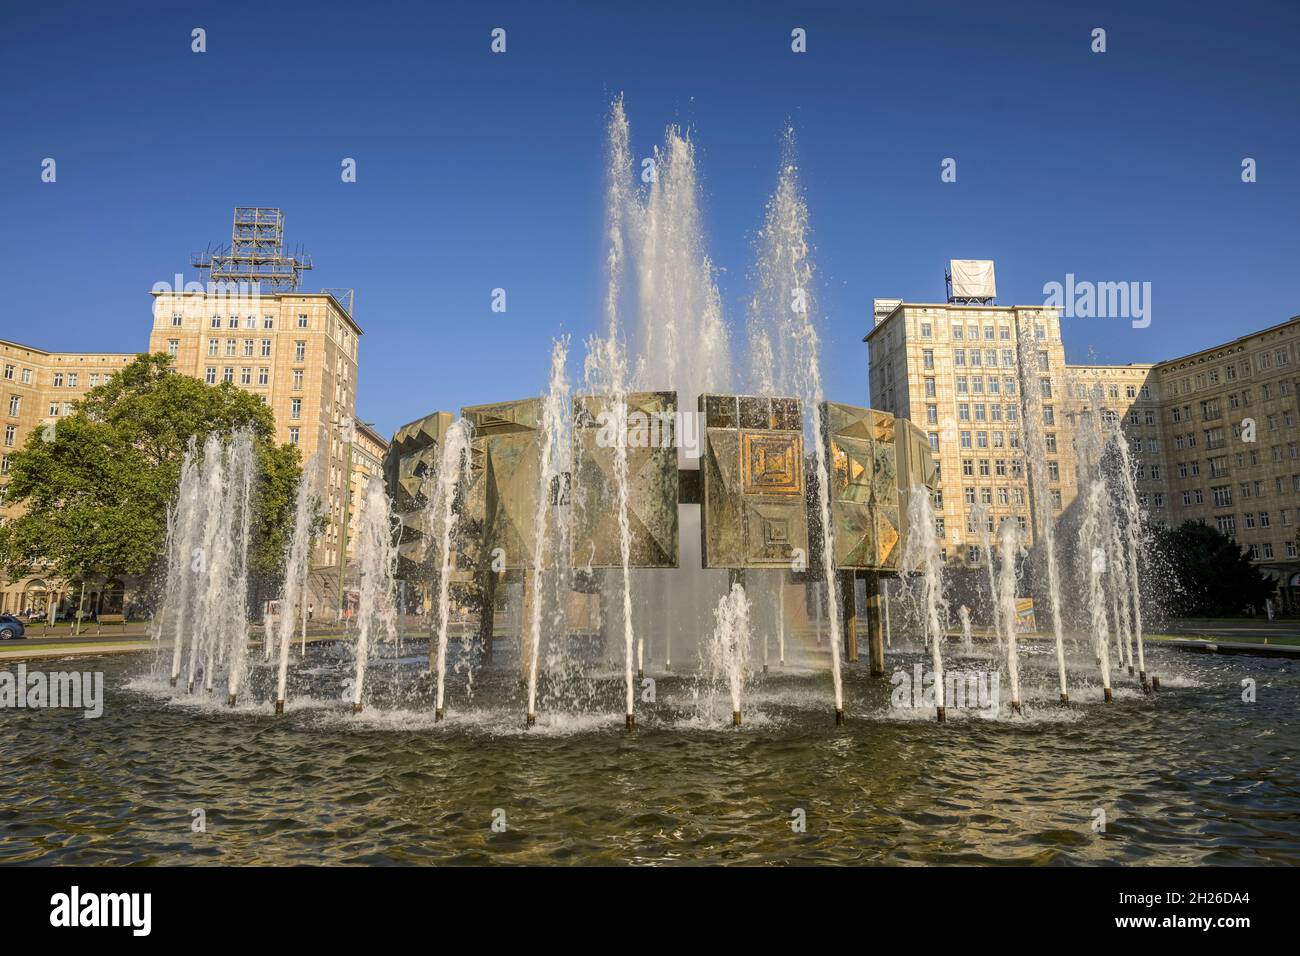 Brunnen, Strausberger Platz, Friedrichshain di Berlino, Deutschland Foto Stock